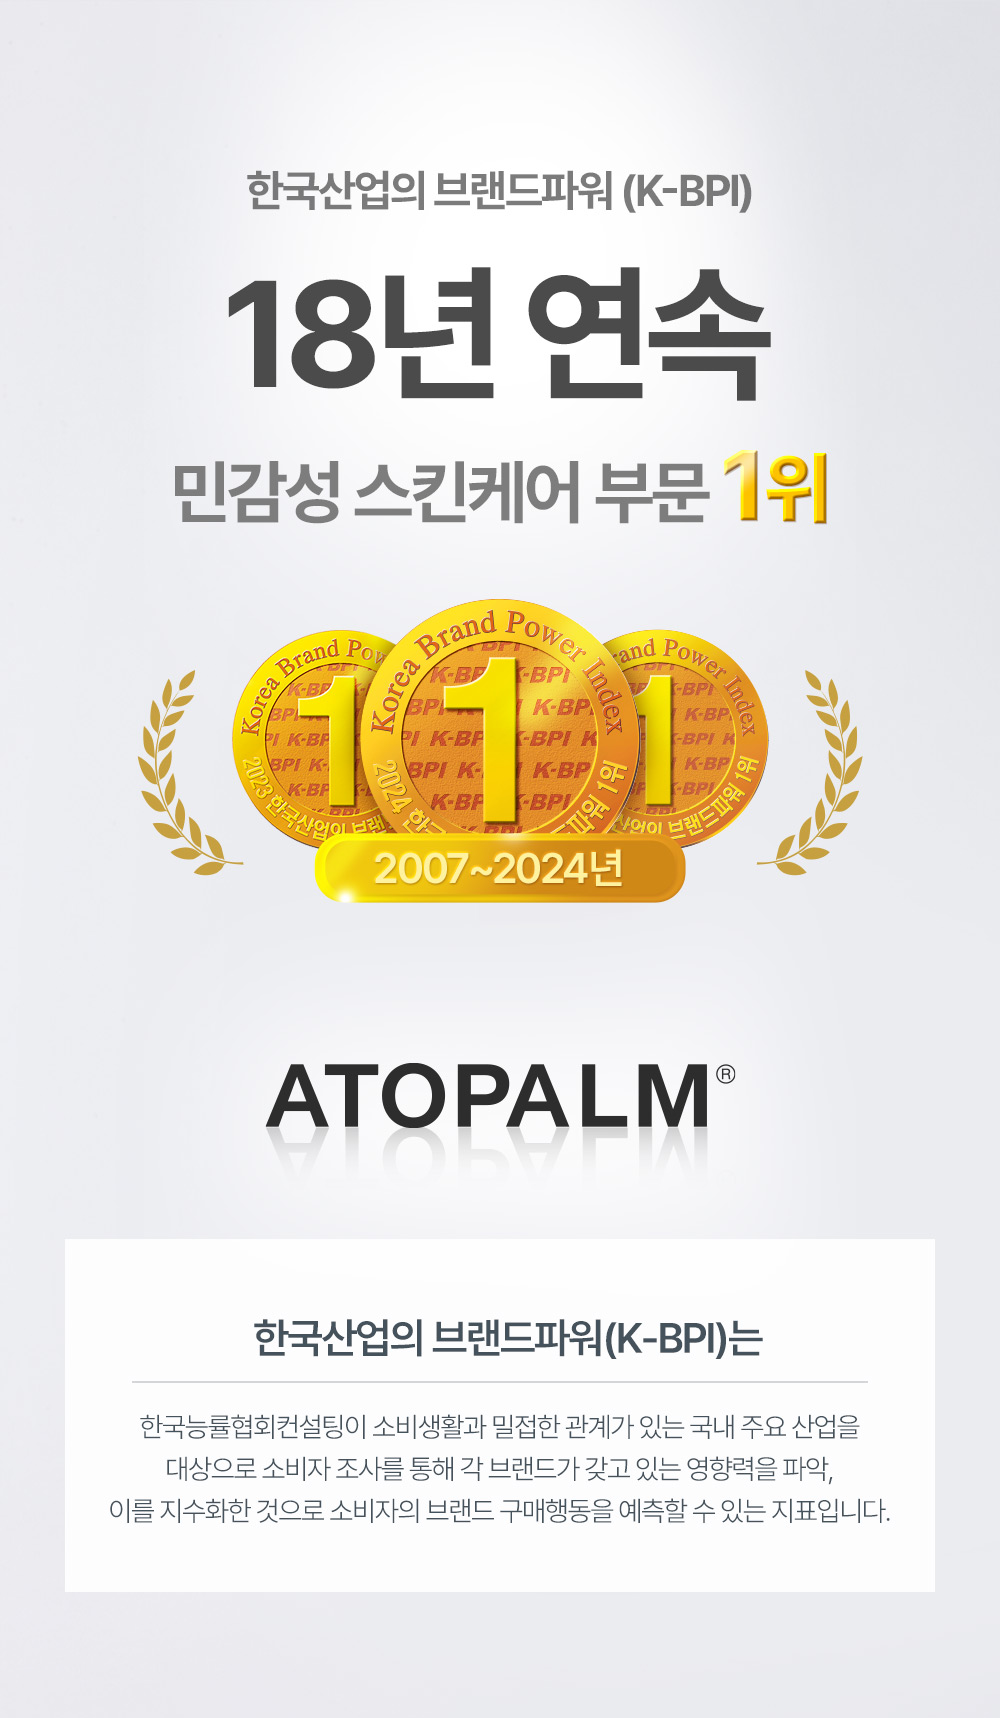 아토팜 KBPI(한국산업의 브랜드파워) 17년 연속 수상 민감성 스킨케어 부문 1위